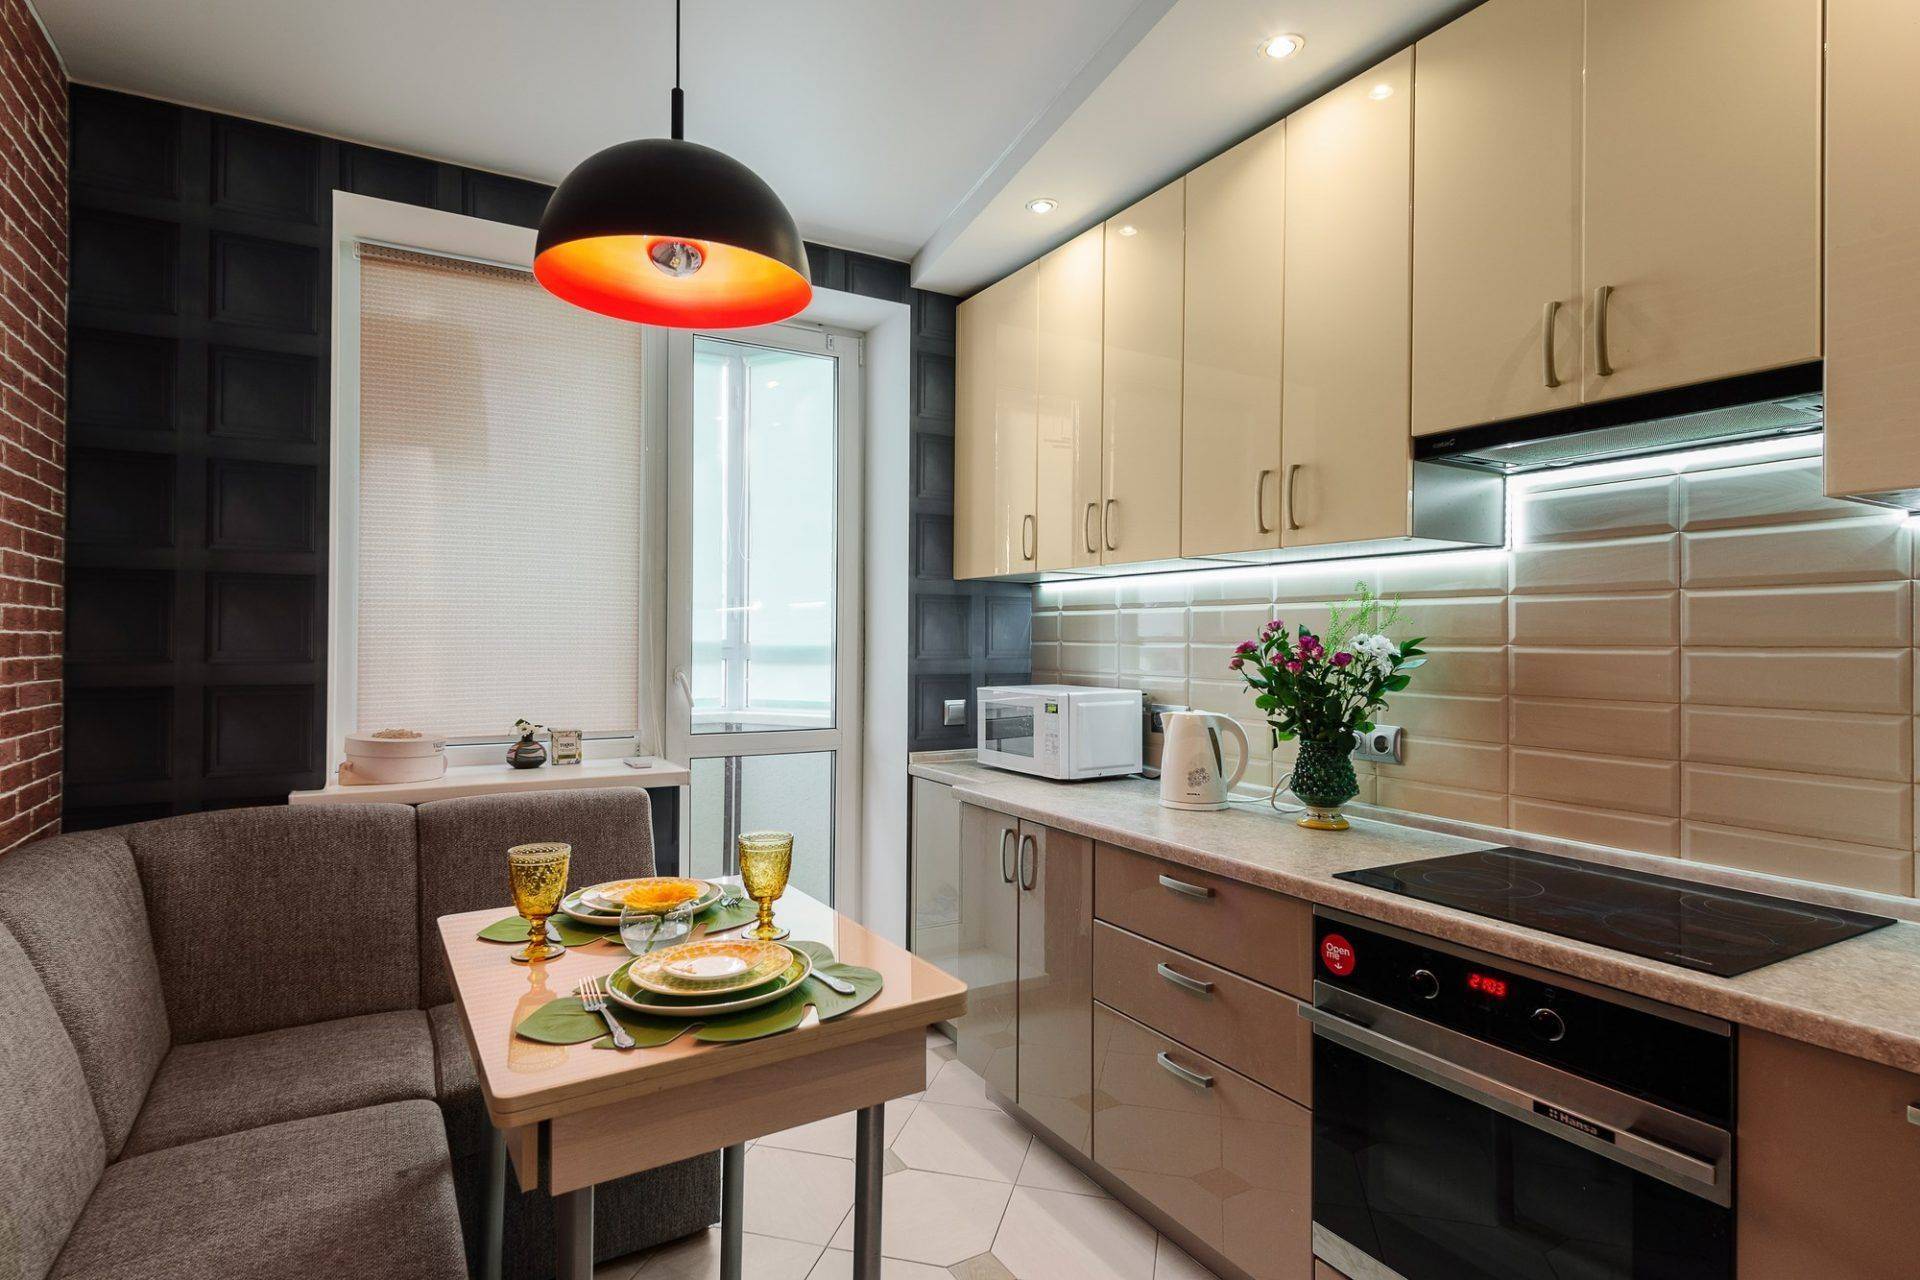 Дизайн кухни 10 кв м – фото дизайна и планировок кухонь площадью 10 метров